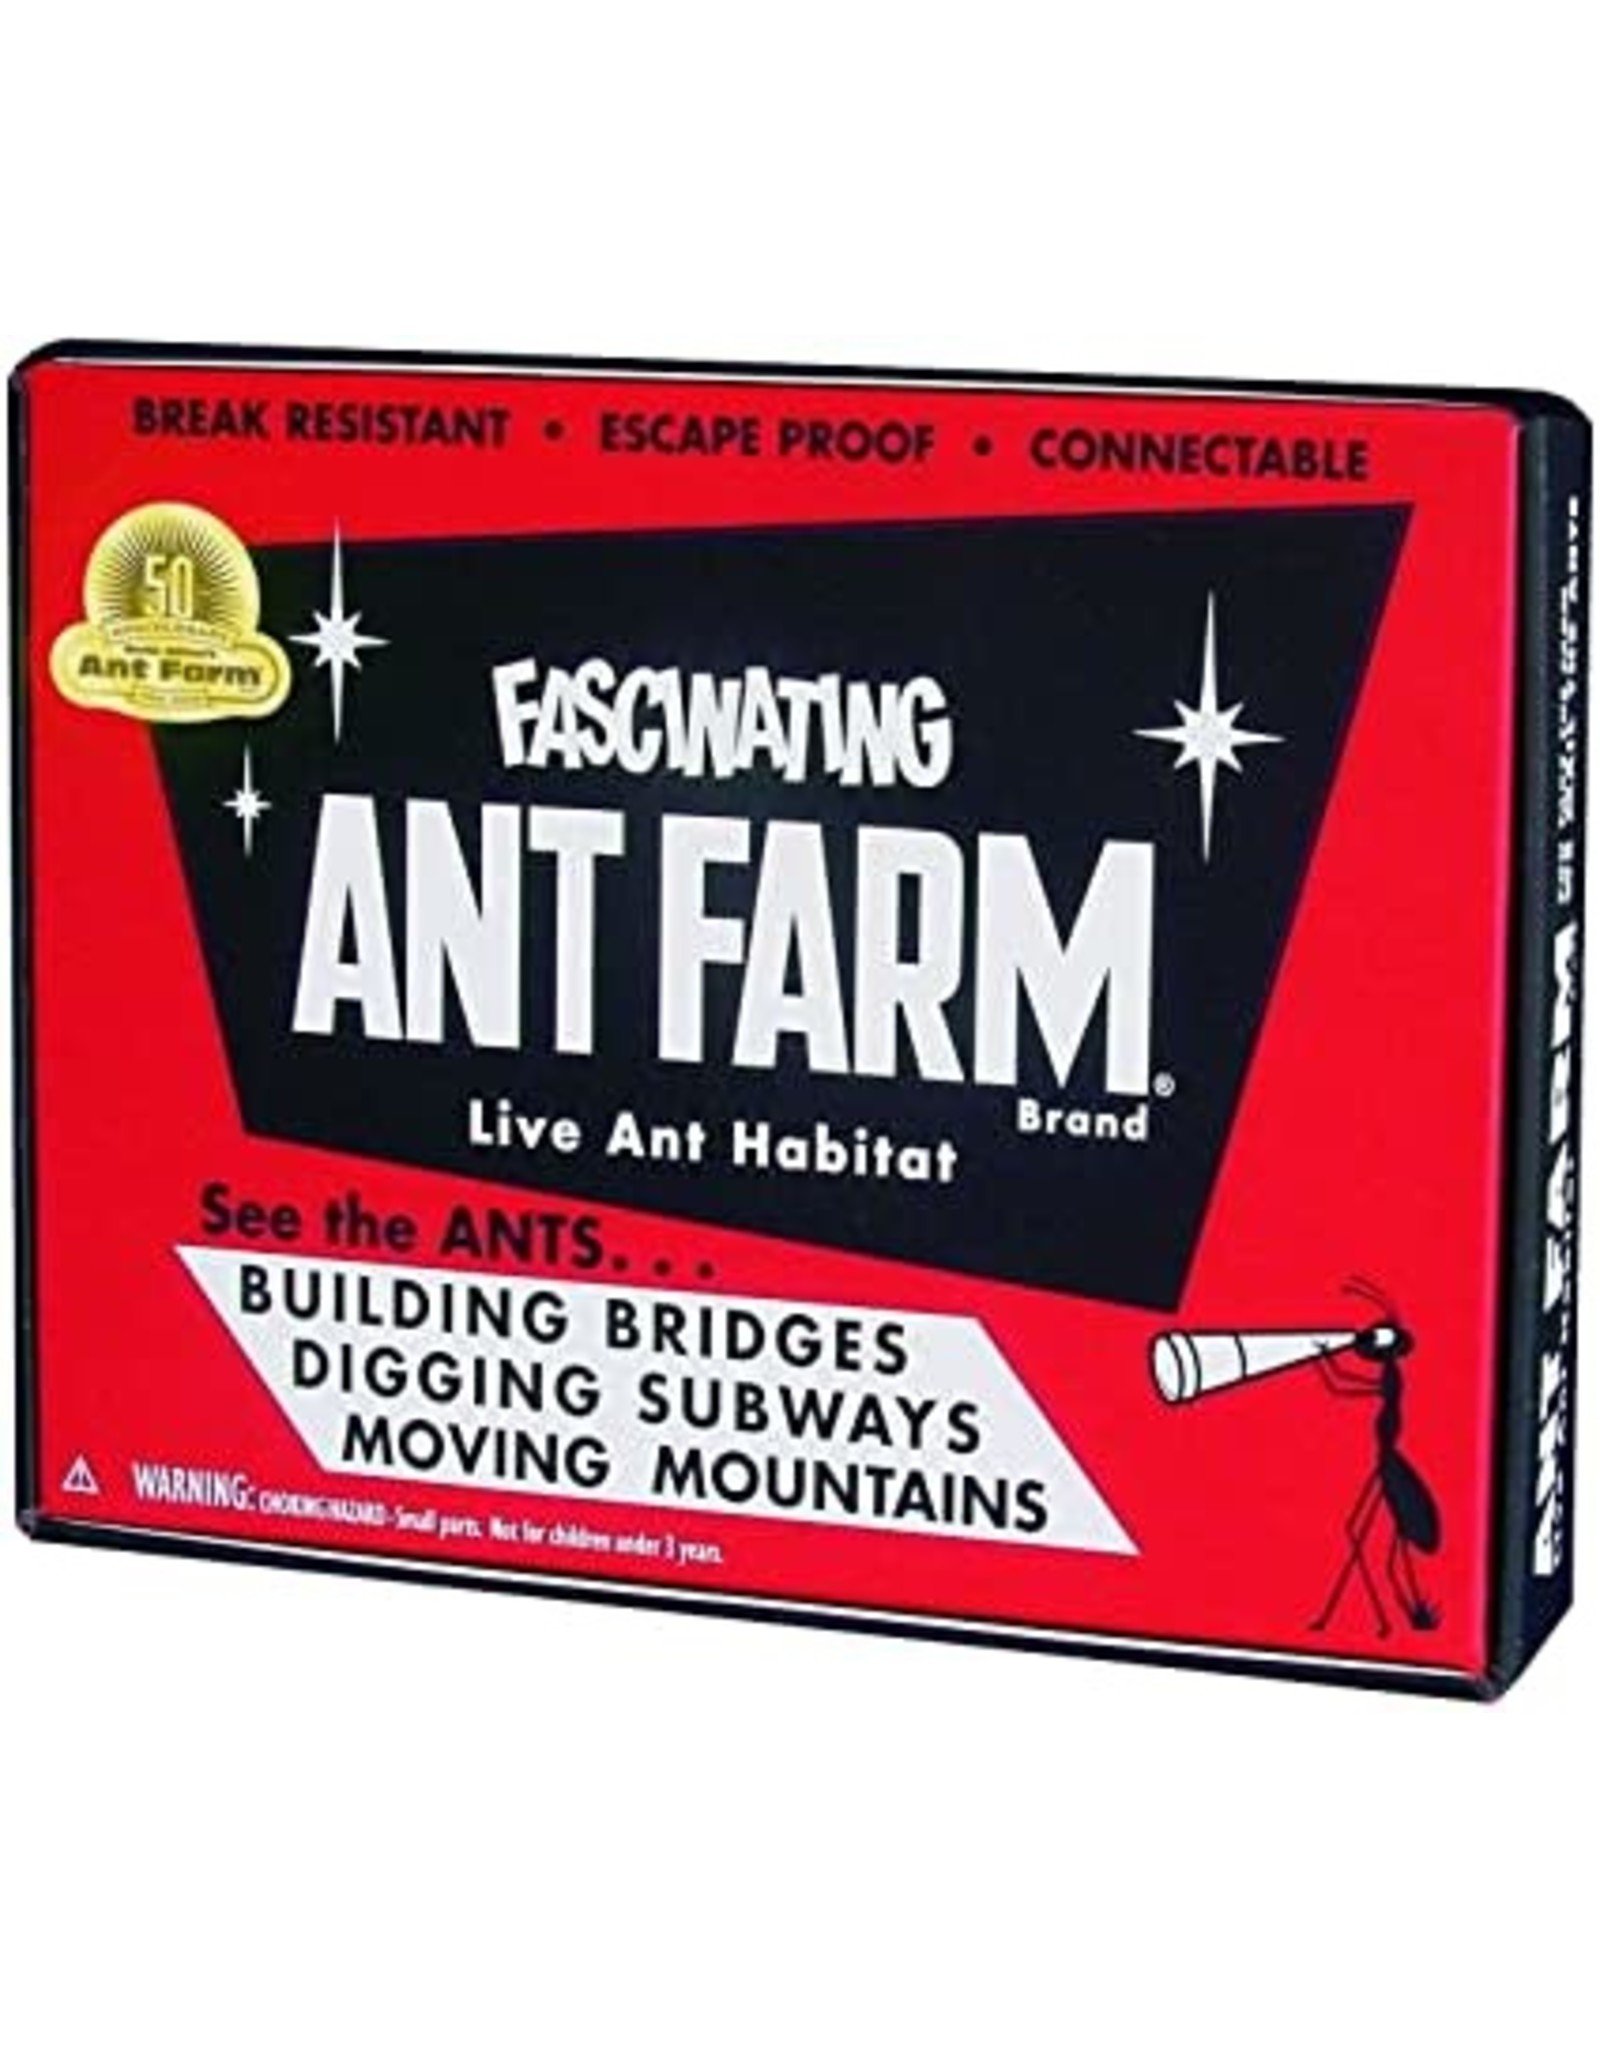 Uncle Milton's Classic Ant Farm